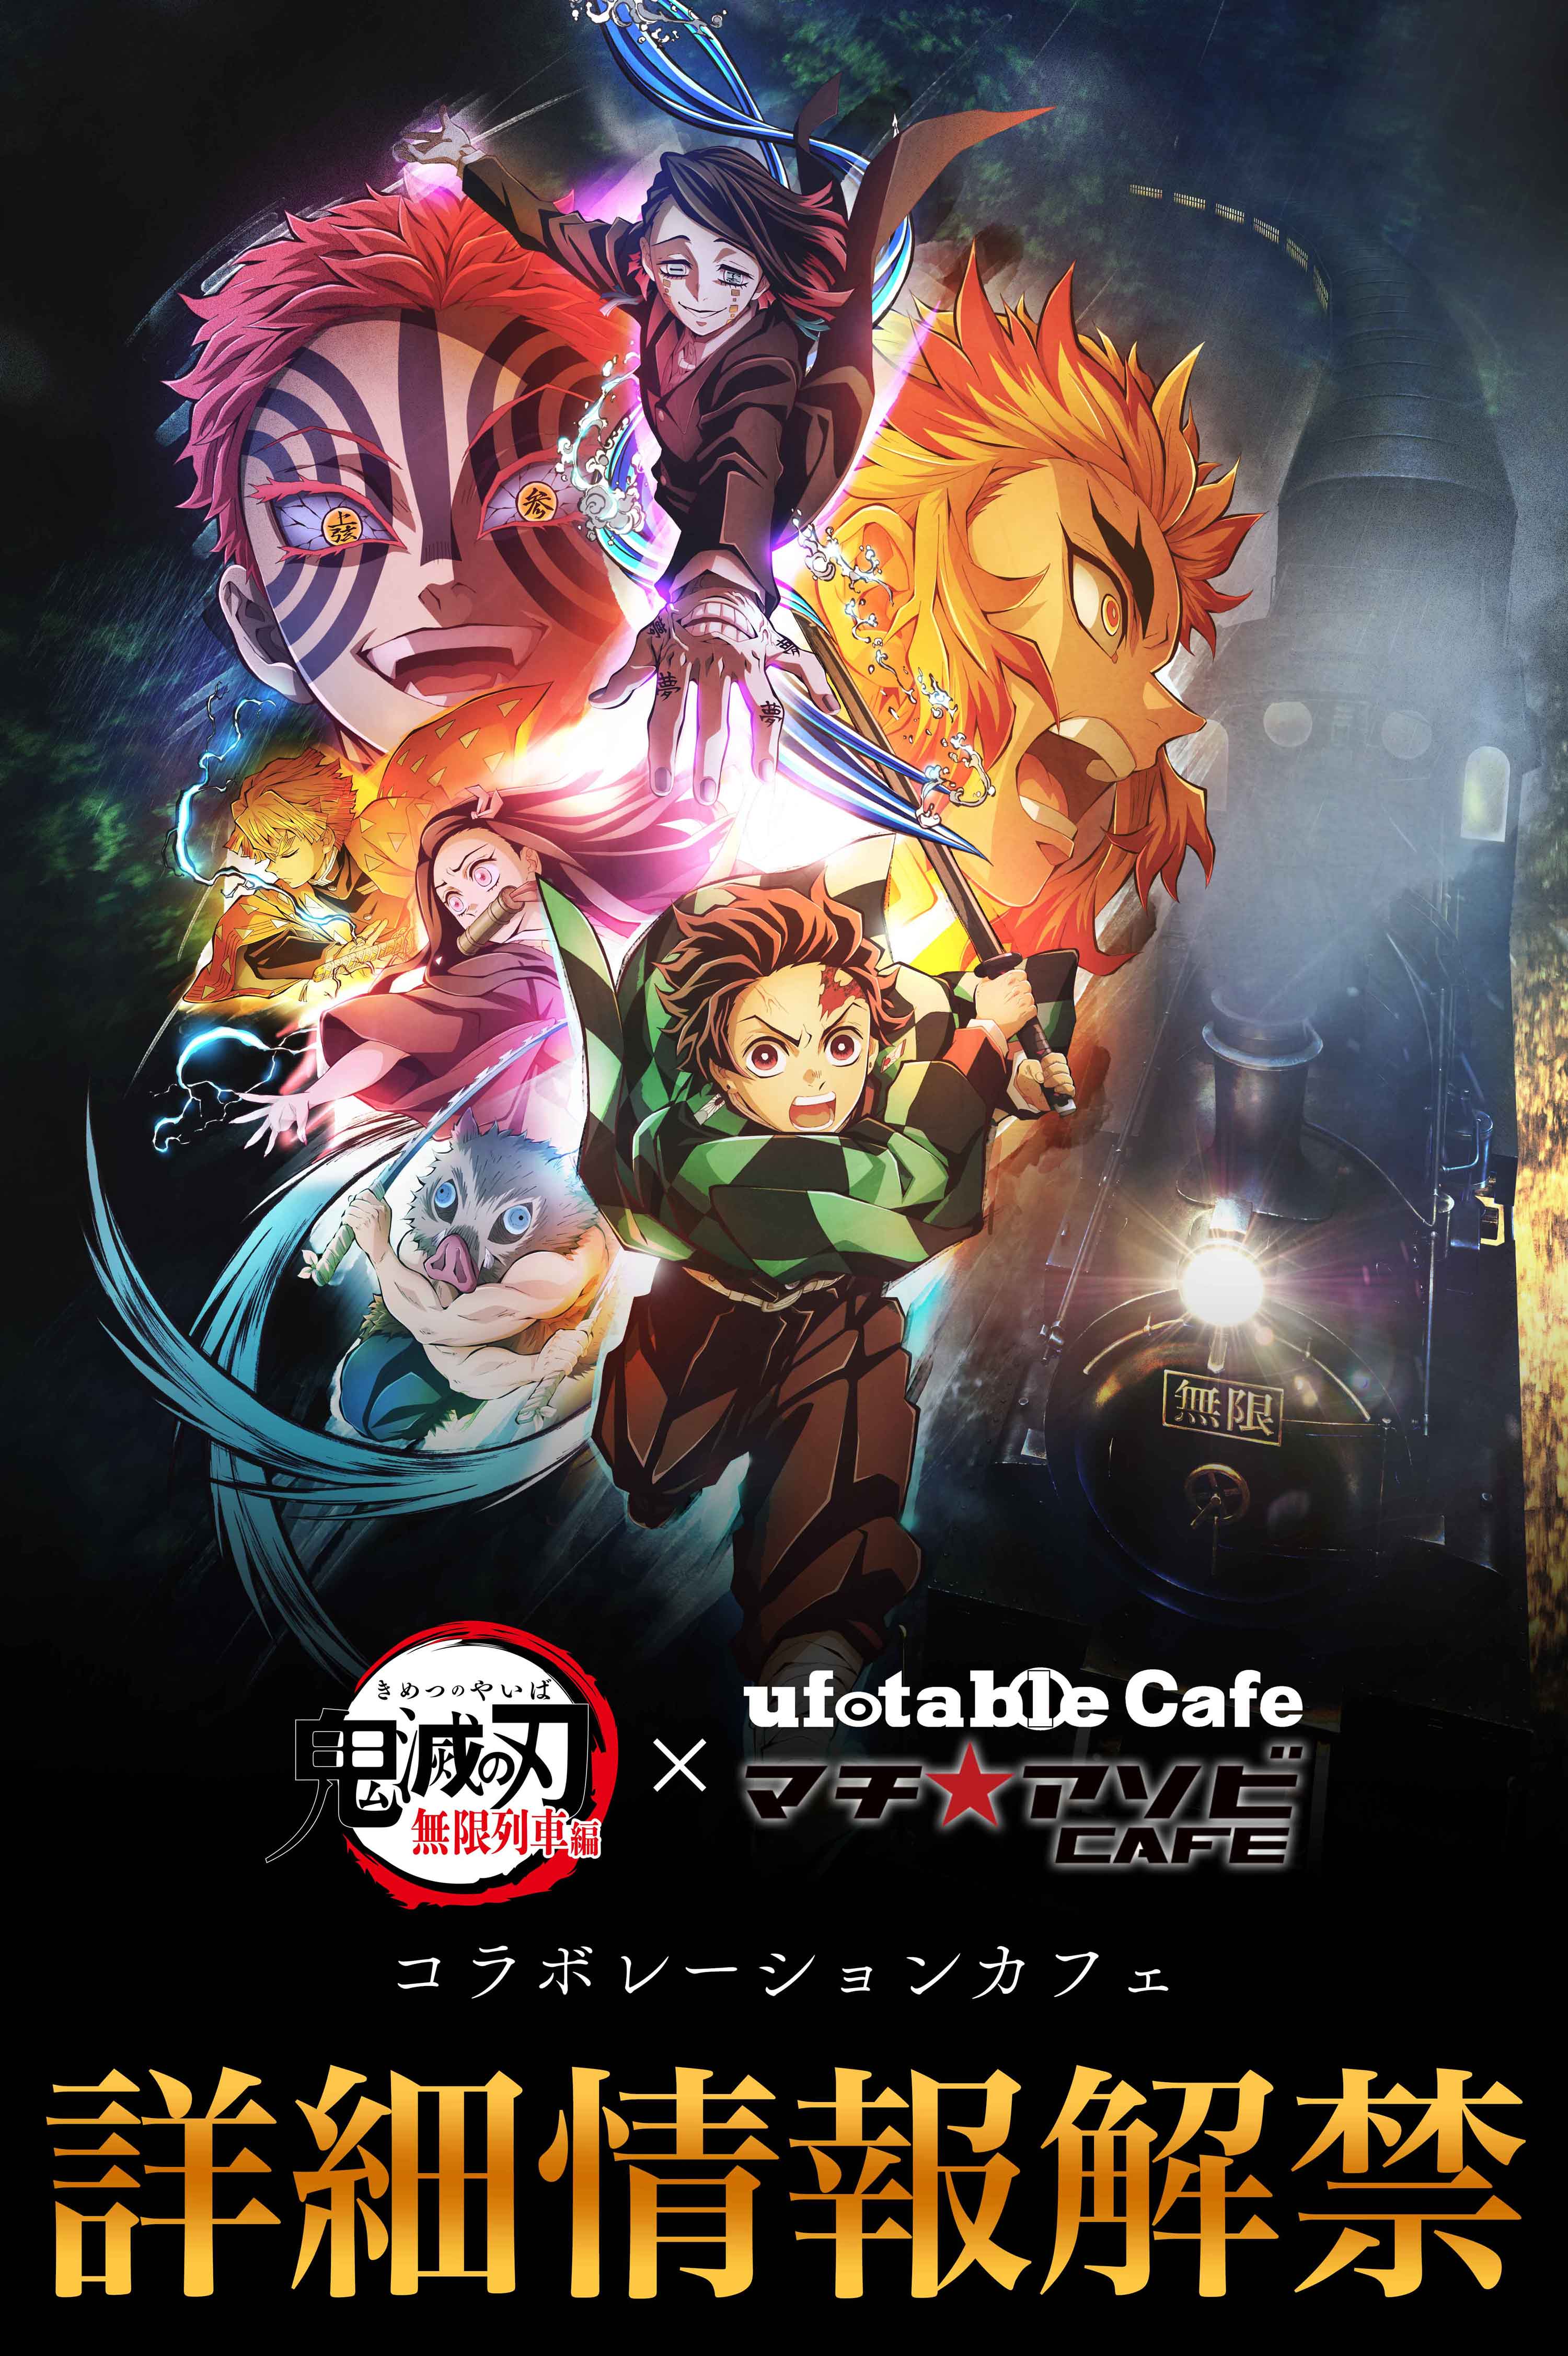 【東京】ufotableCafeTOKYO 11/13(土)  テレビアニメ「鬼滅の刃」無限列車編 コラボレーションカフェ